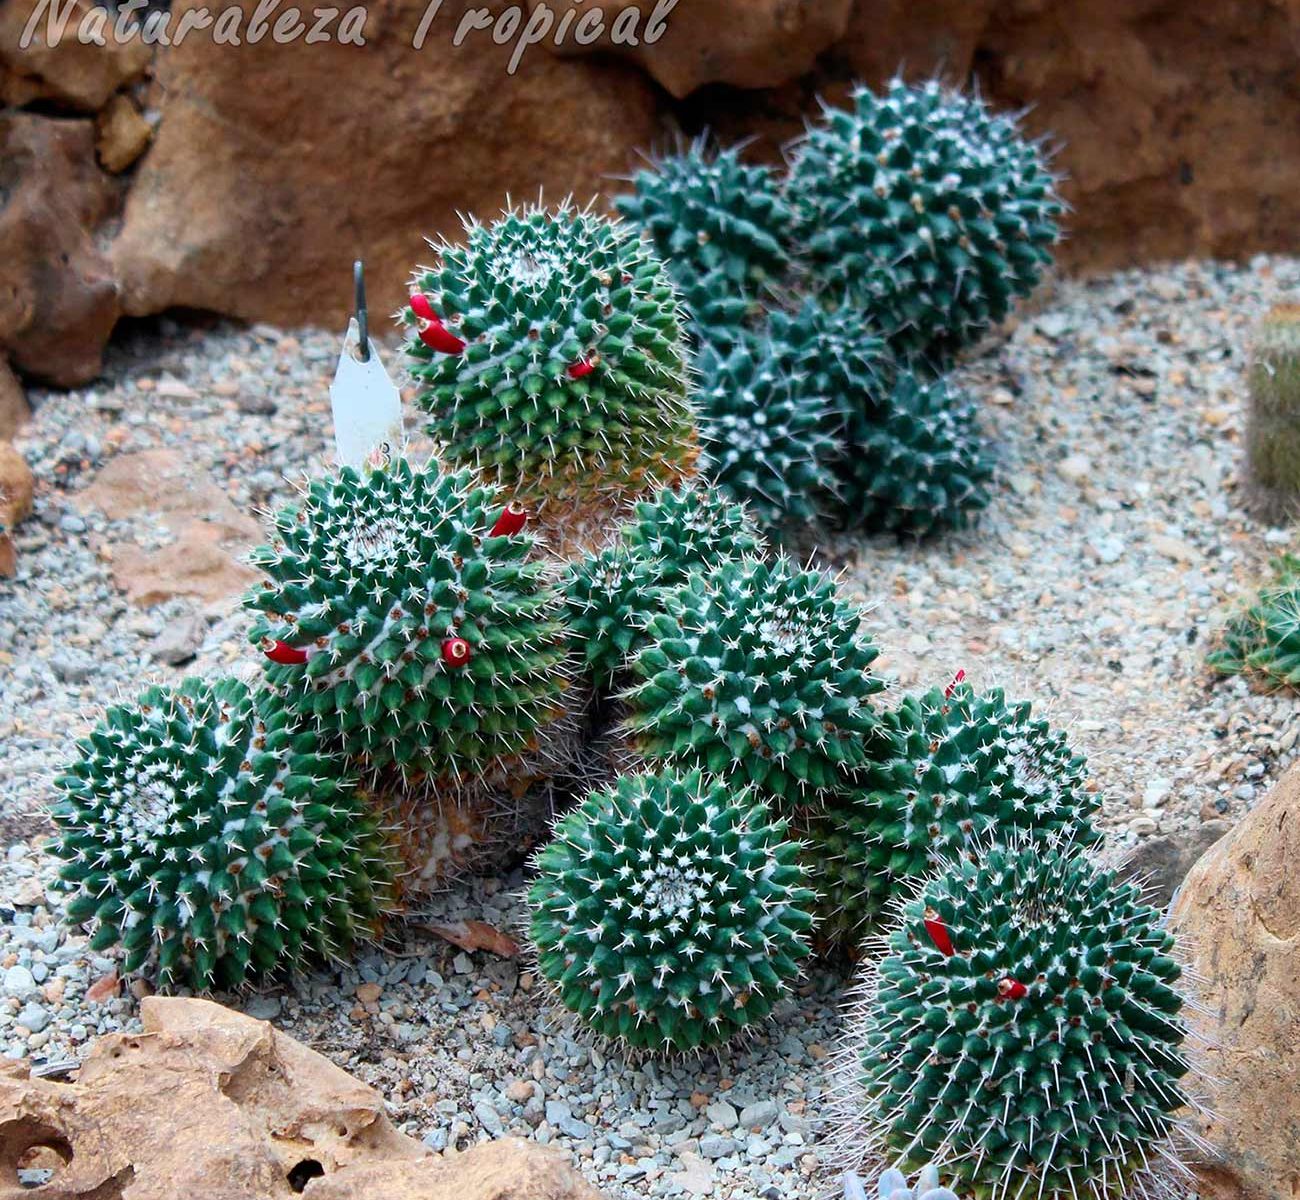 Cactus del género Mammillaria creciendo en un xerojardín